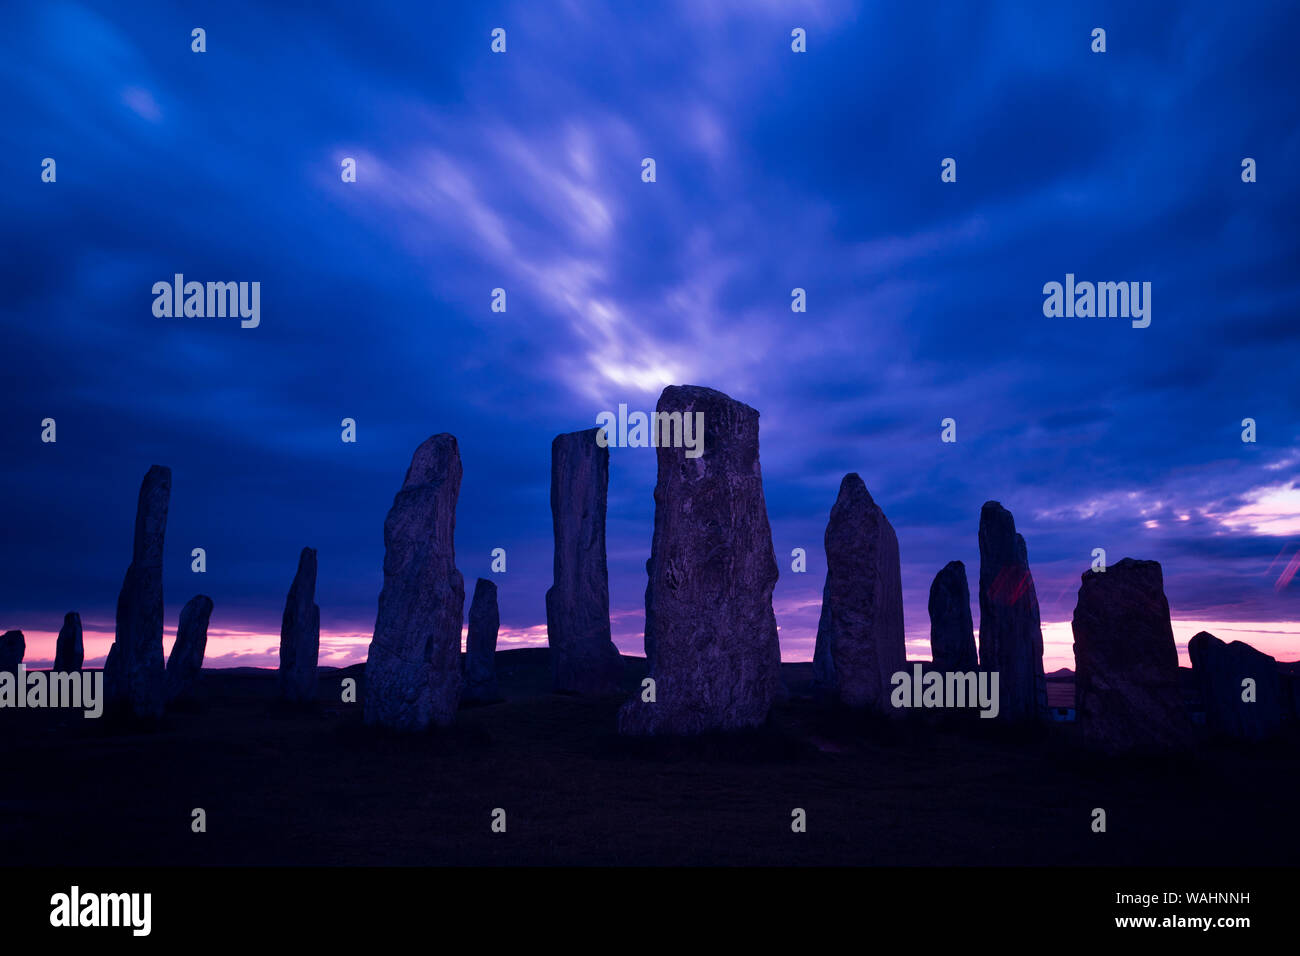 Silhouette der alten Callanish Standing Stones, gegen eine dramatische bewölkter Himmel bei Sonnenuntergang, Calanais, Äußere Hebriden, Isle of Lewis, Schottland, Großbritannien. Stockfoto